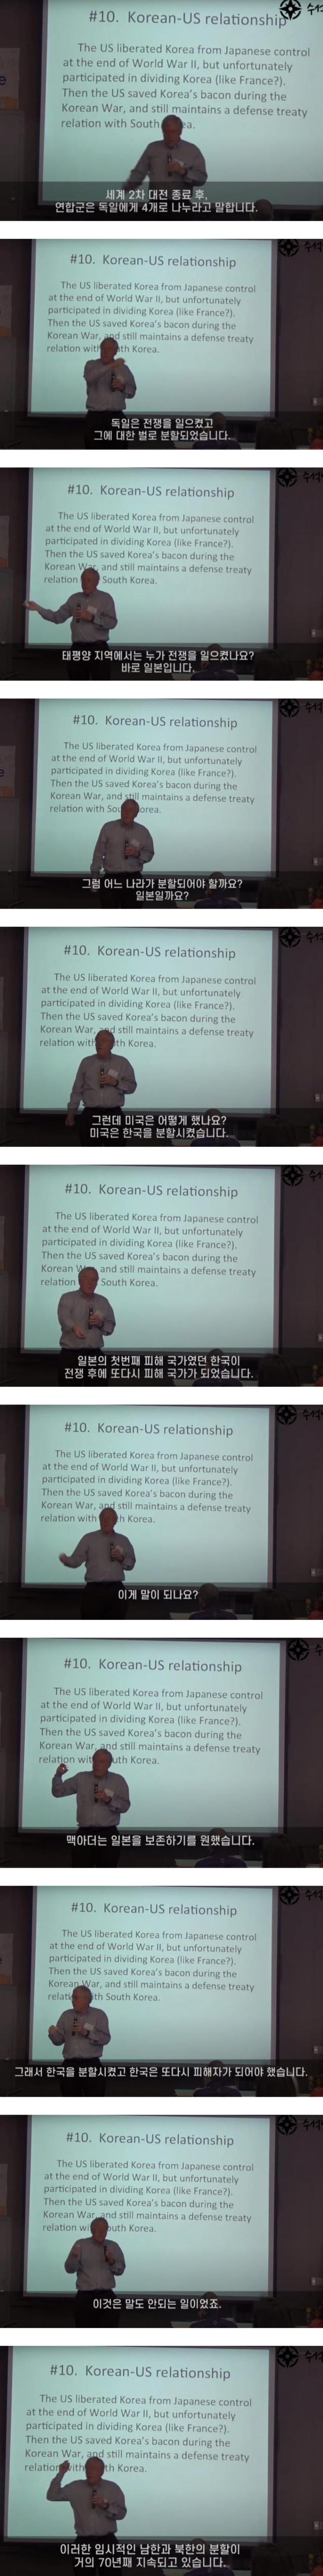 미국인 교수가 설명하는 대한민국 근현대사